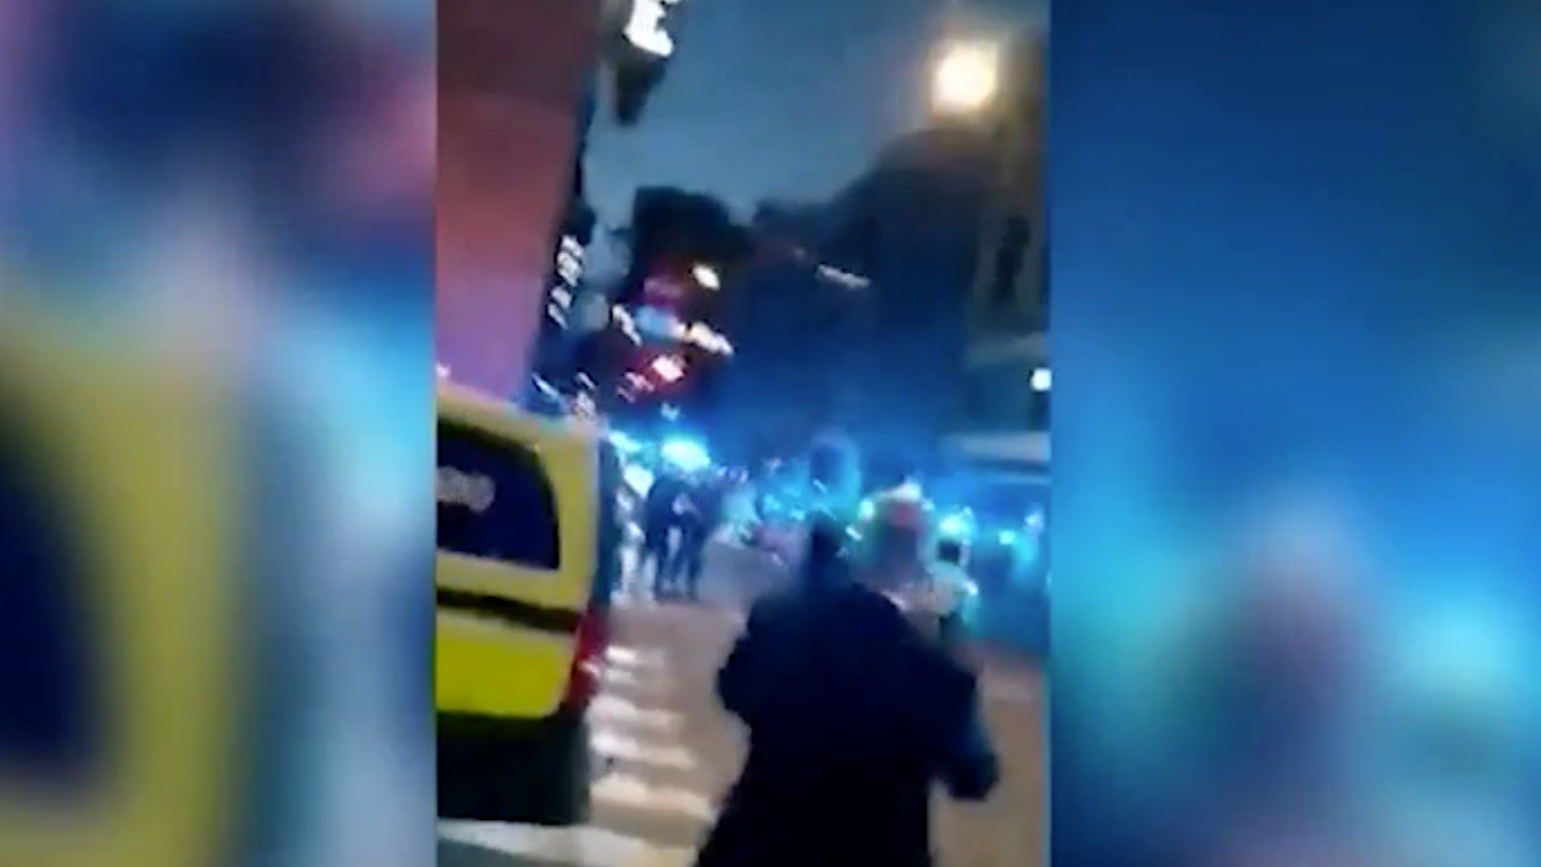 Полиция назвала стрельбу в ночном клубе Осло терактом